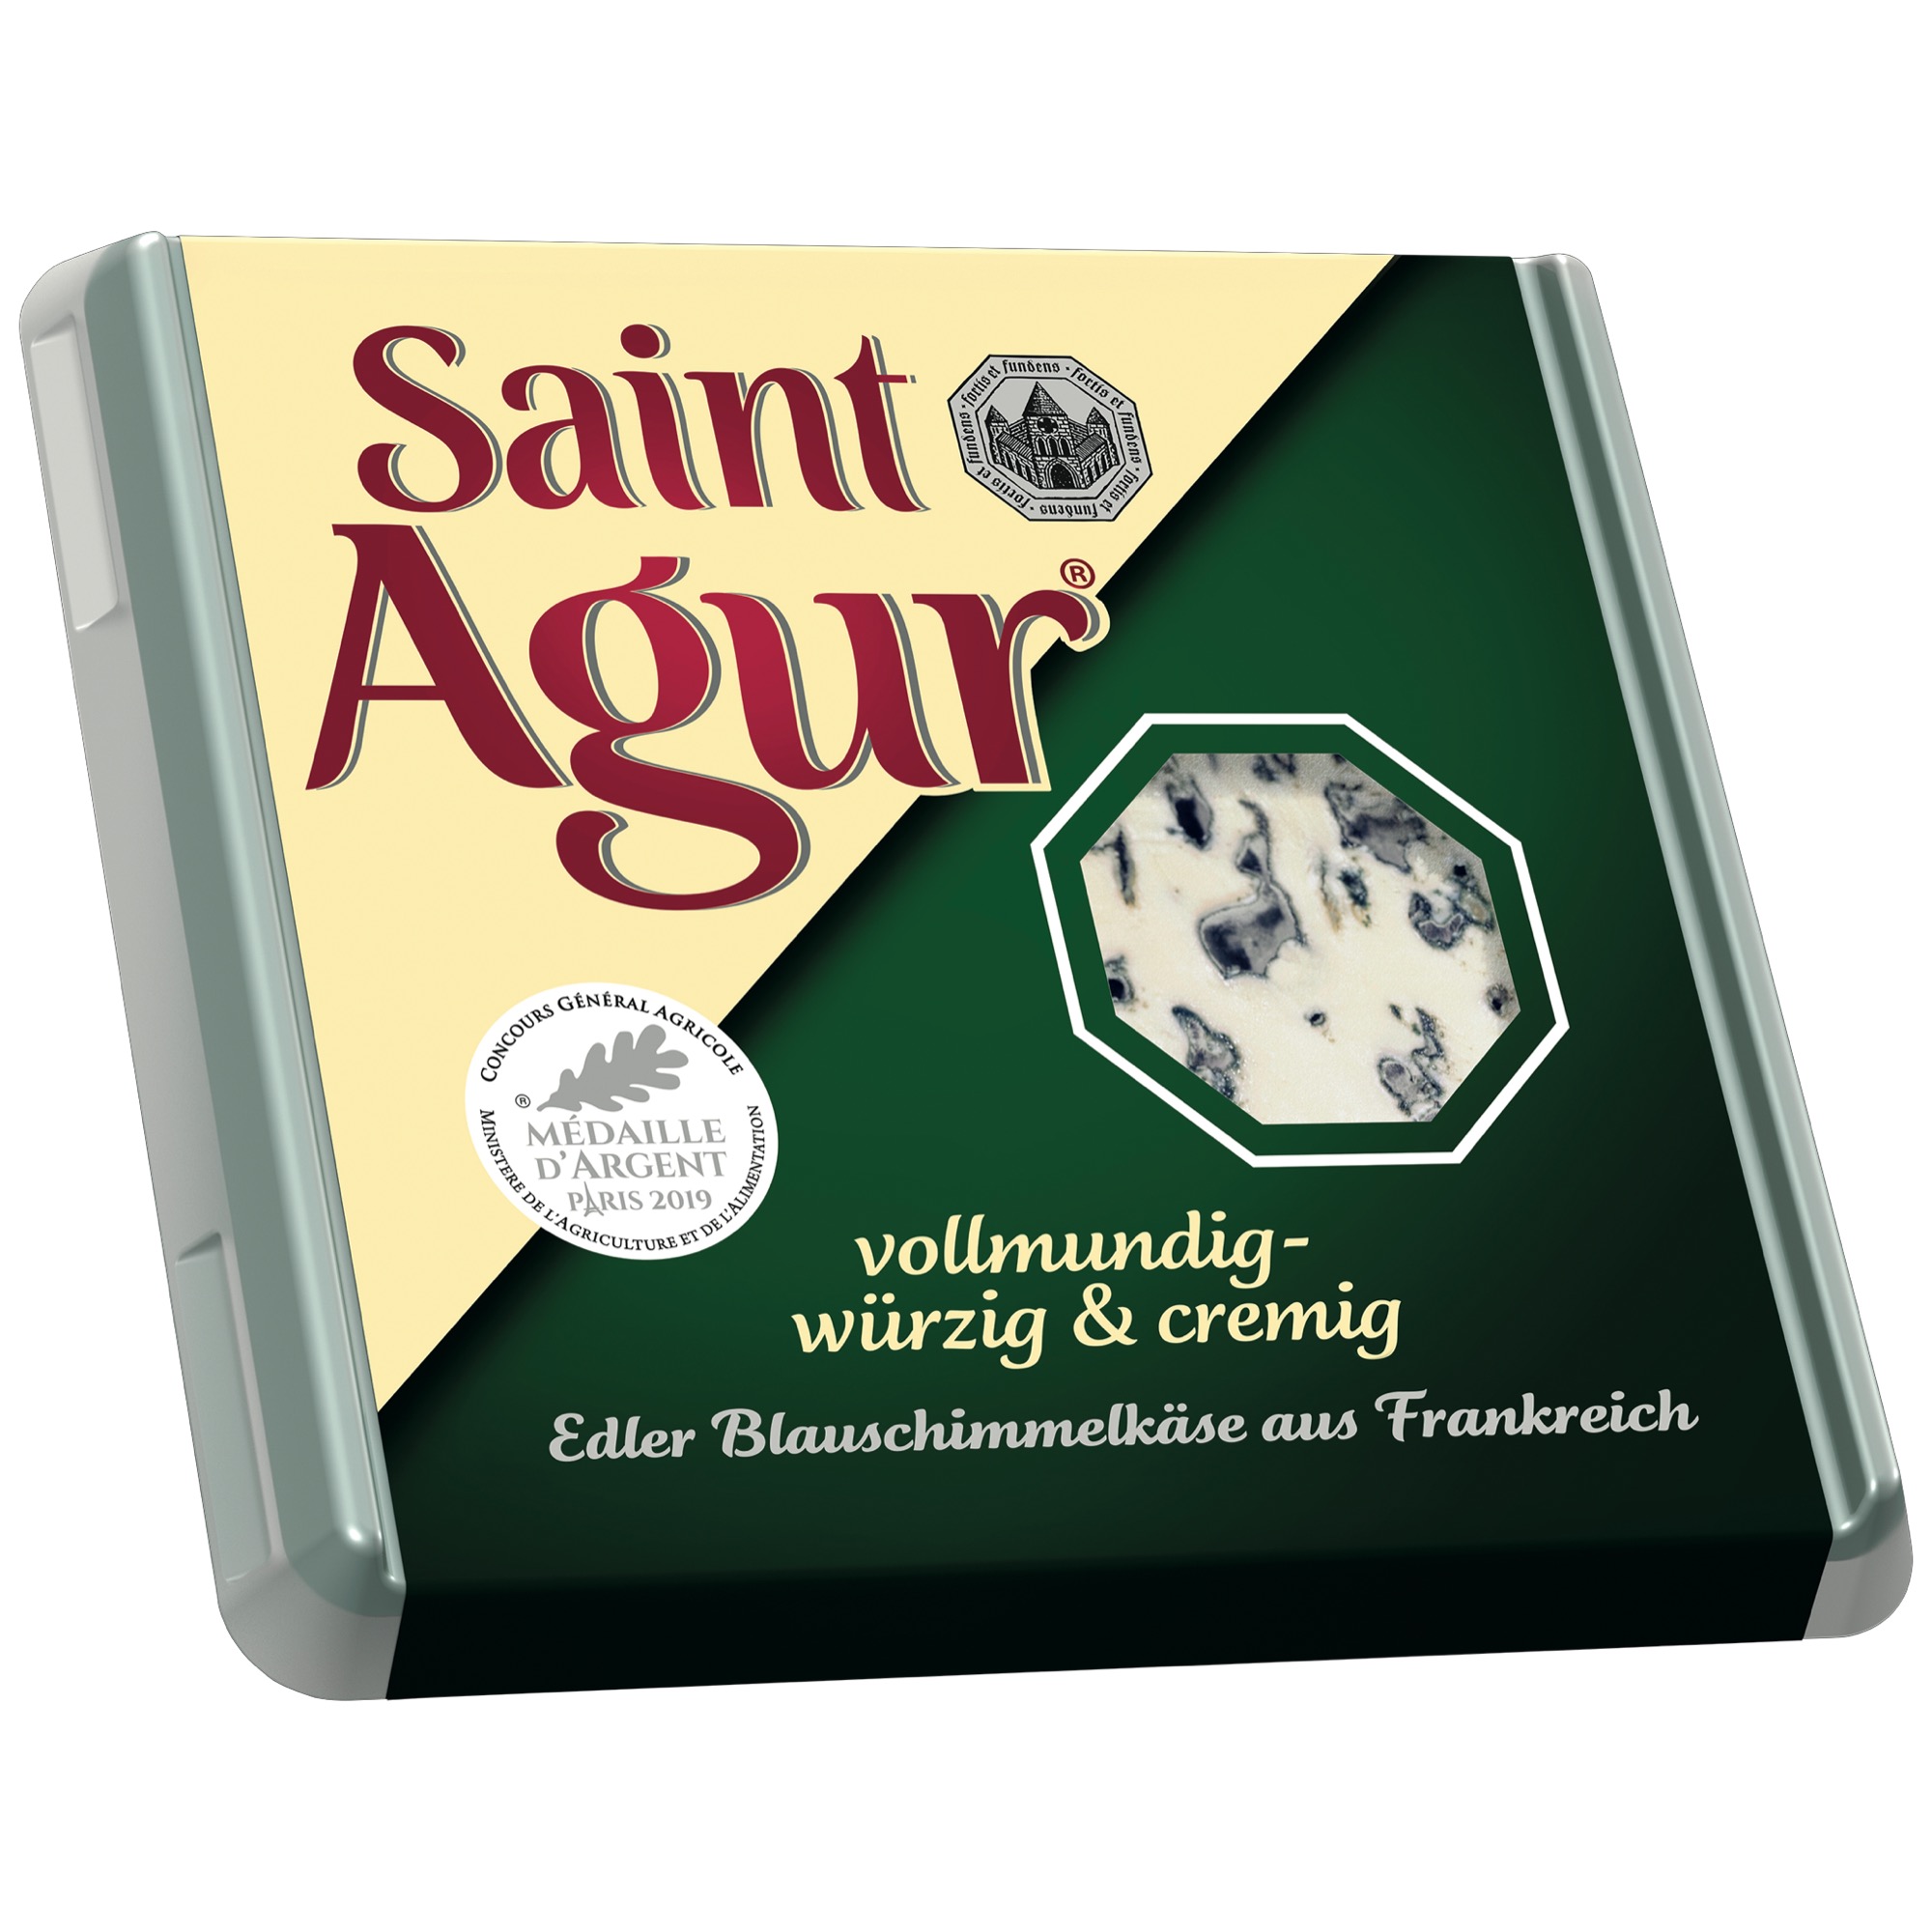 Saint Agur 60% 125g